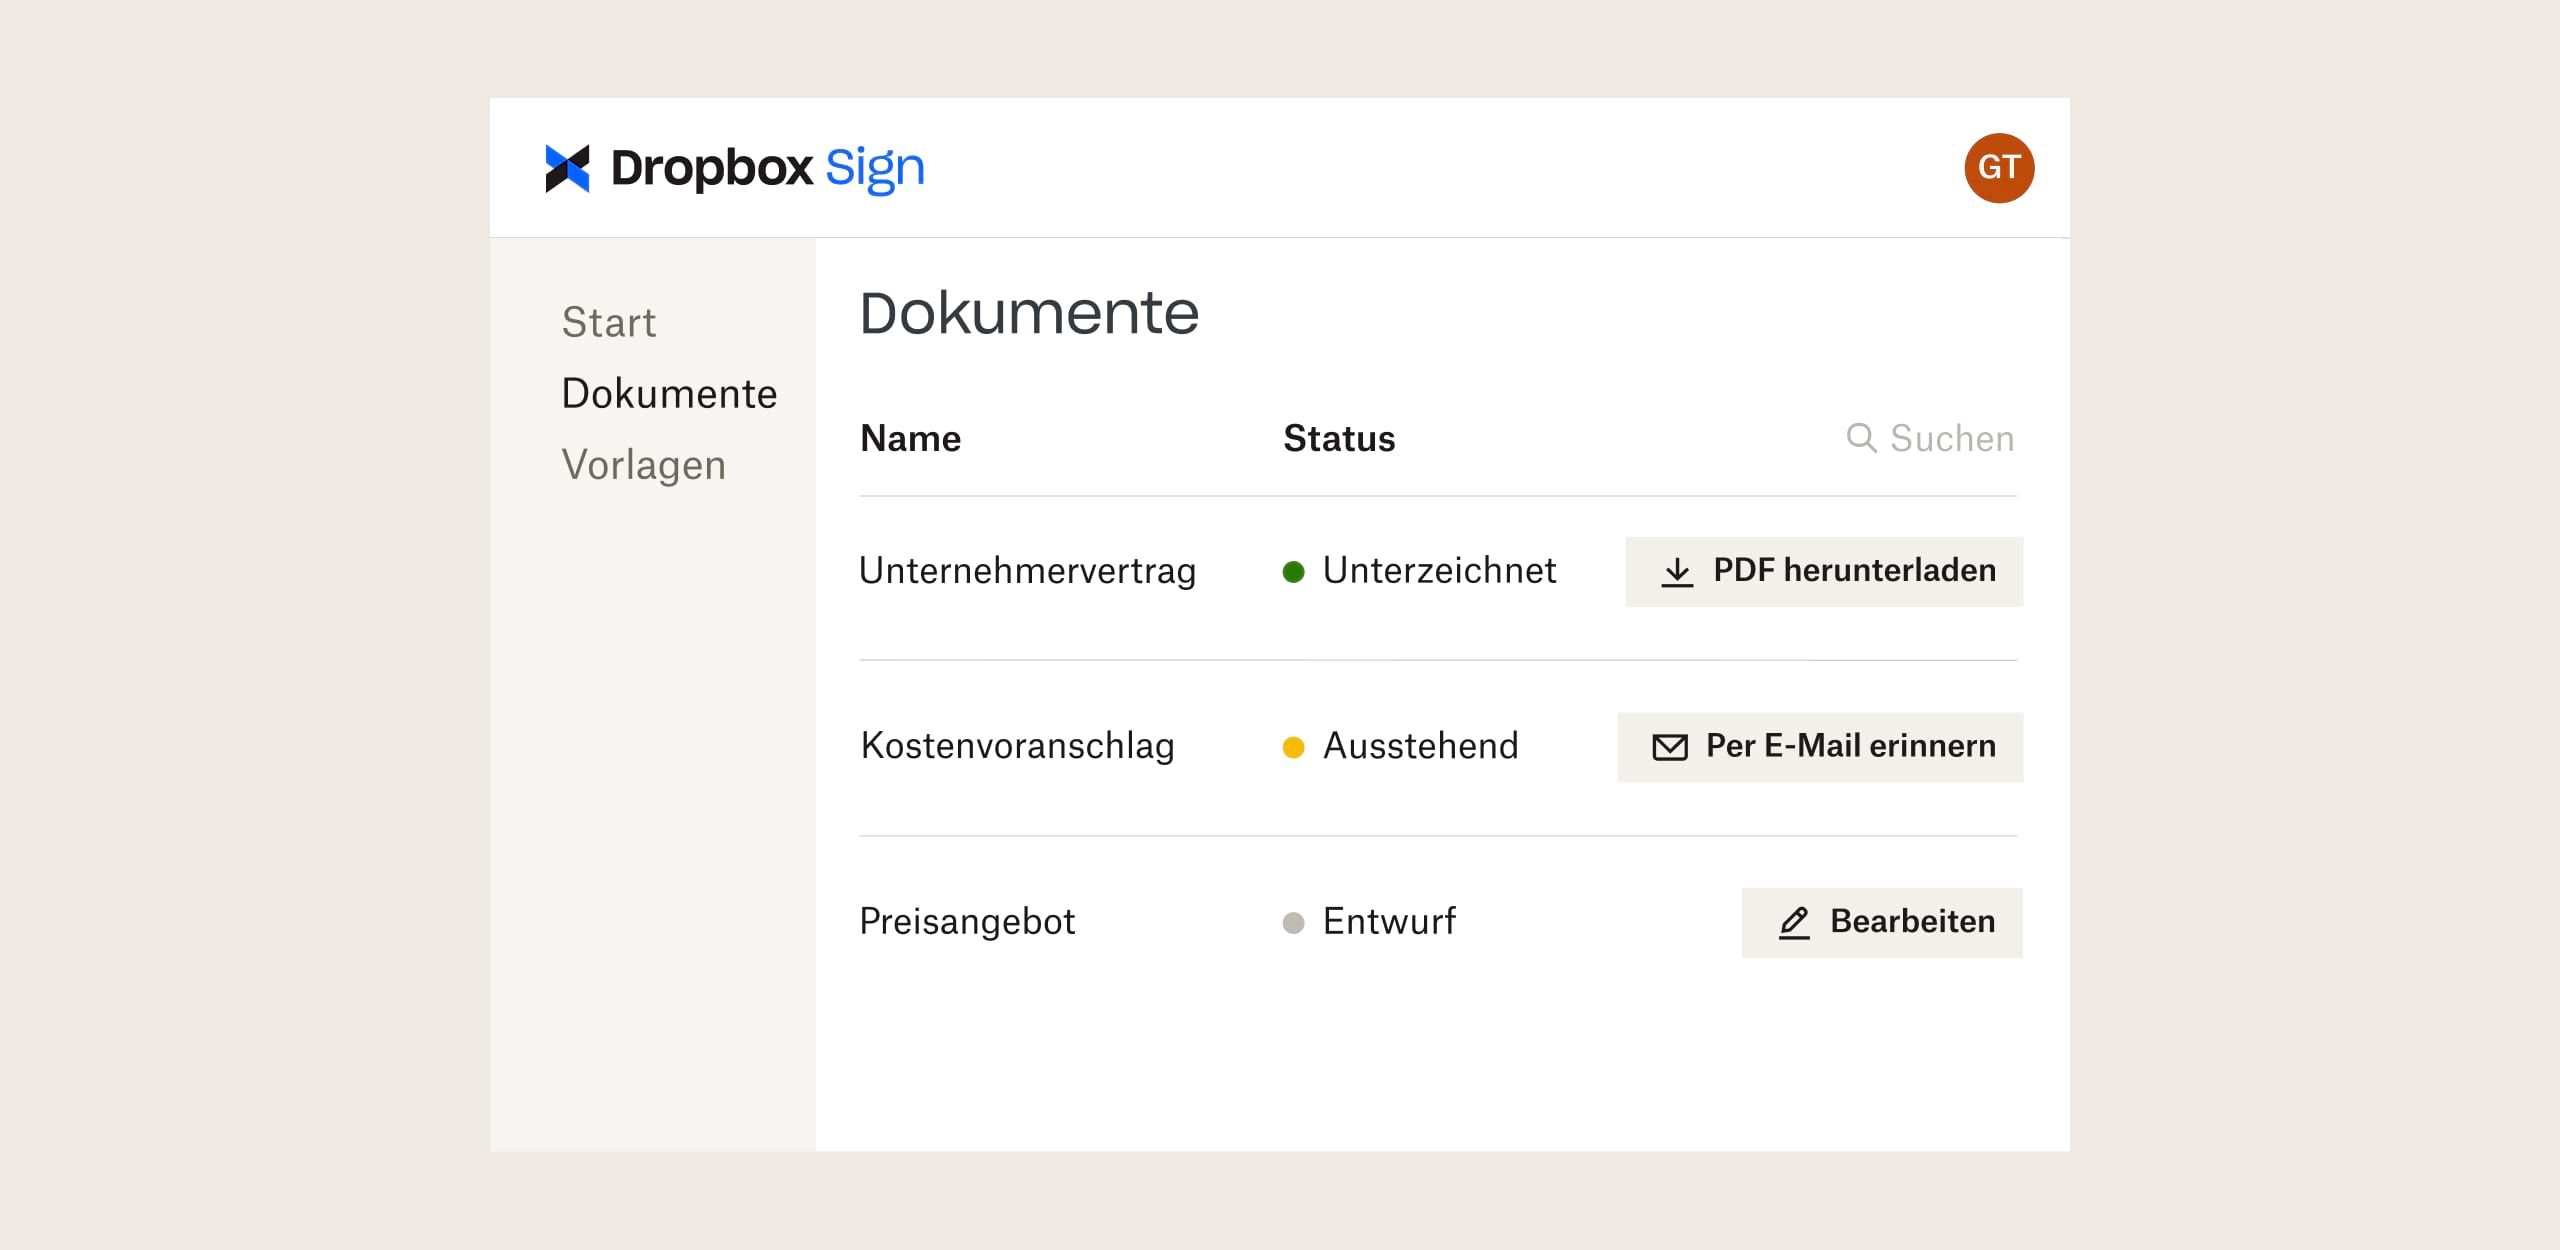 Dropbox Sign-Oberfläche mit Optionen zum Herunterladen, Versenden und Bearbeiten von Dateien